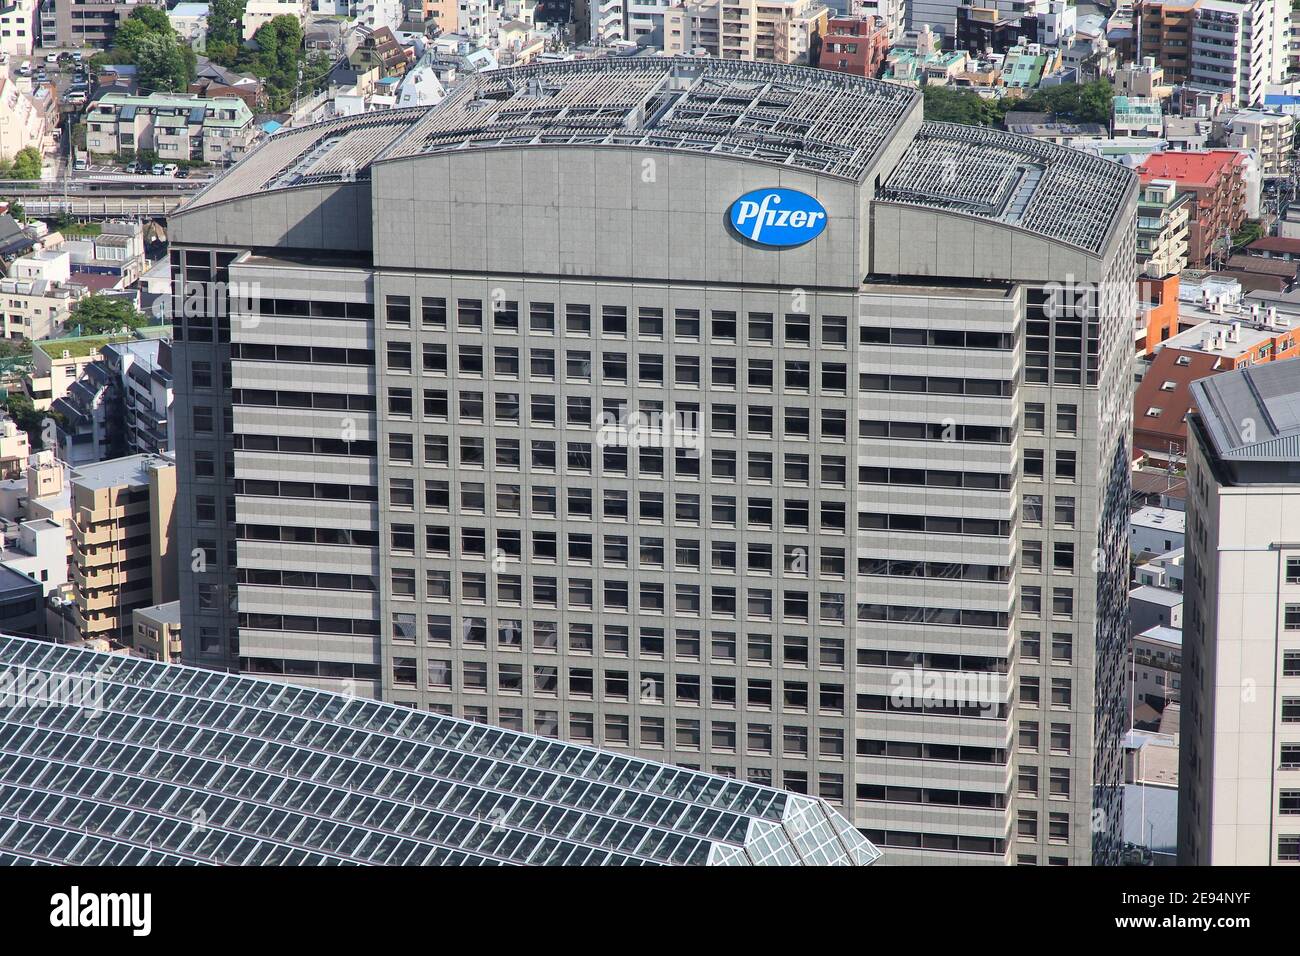 TOKYO, JAPON - 11 MAI 2012 : le bâtiment Pfizer à Tokyo. Pfizer est l'une des plus grandes sociétés pharmaceutiques dans le monde. Il existe depuis 1849. Banque D'Images